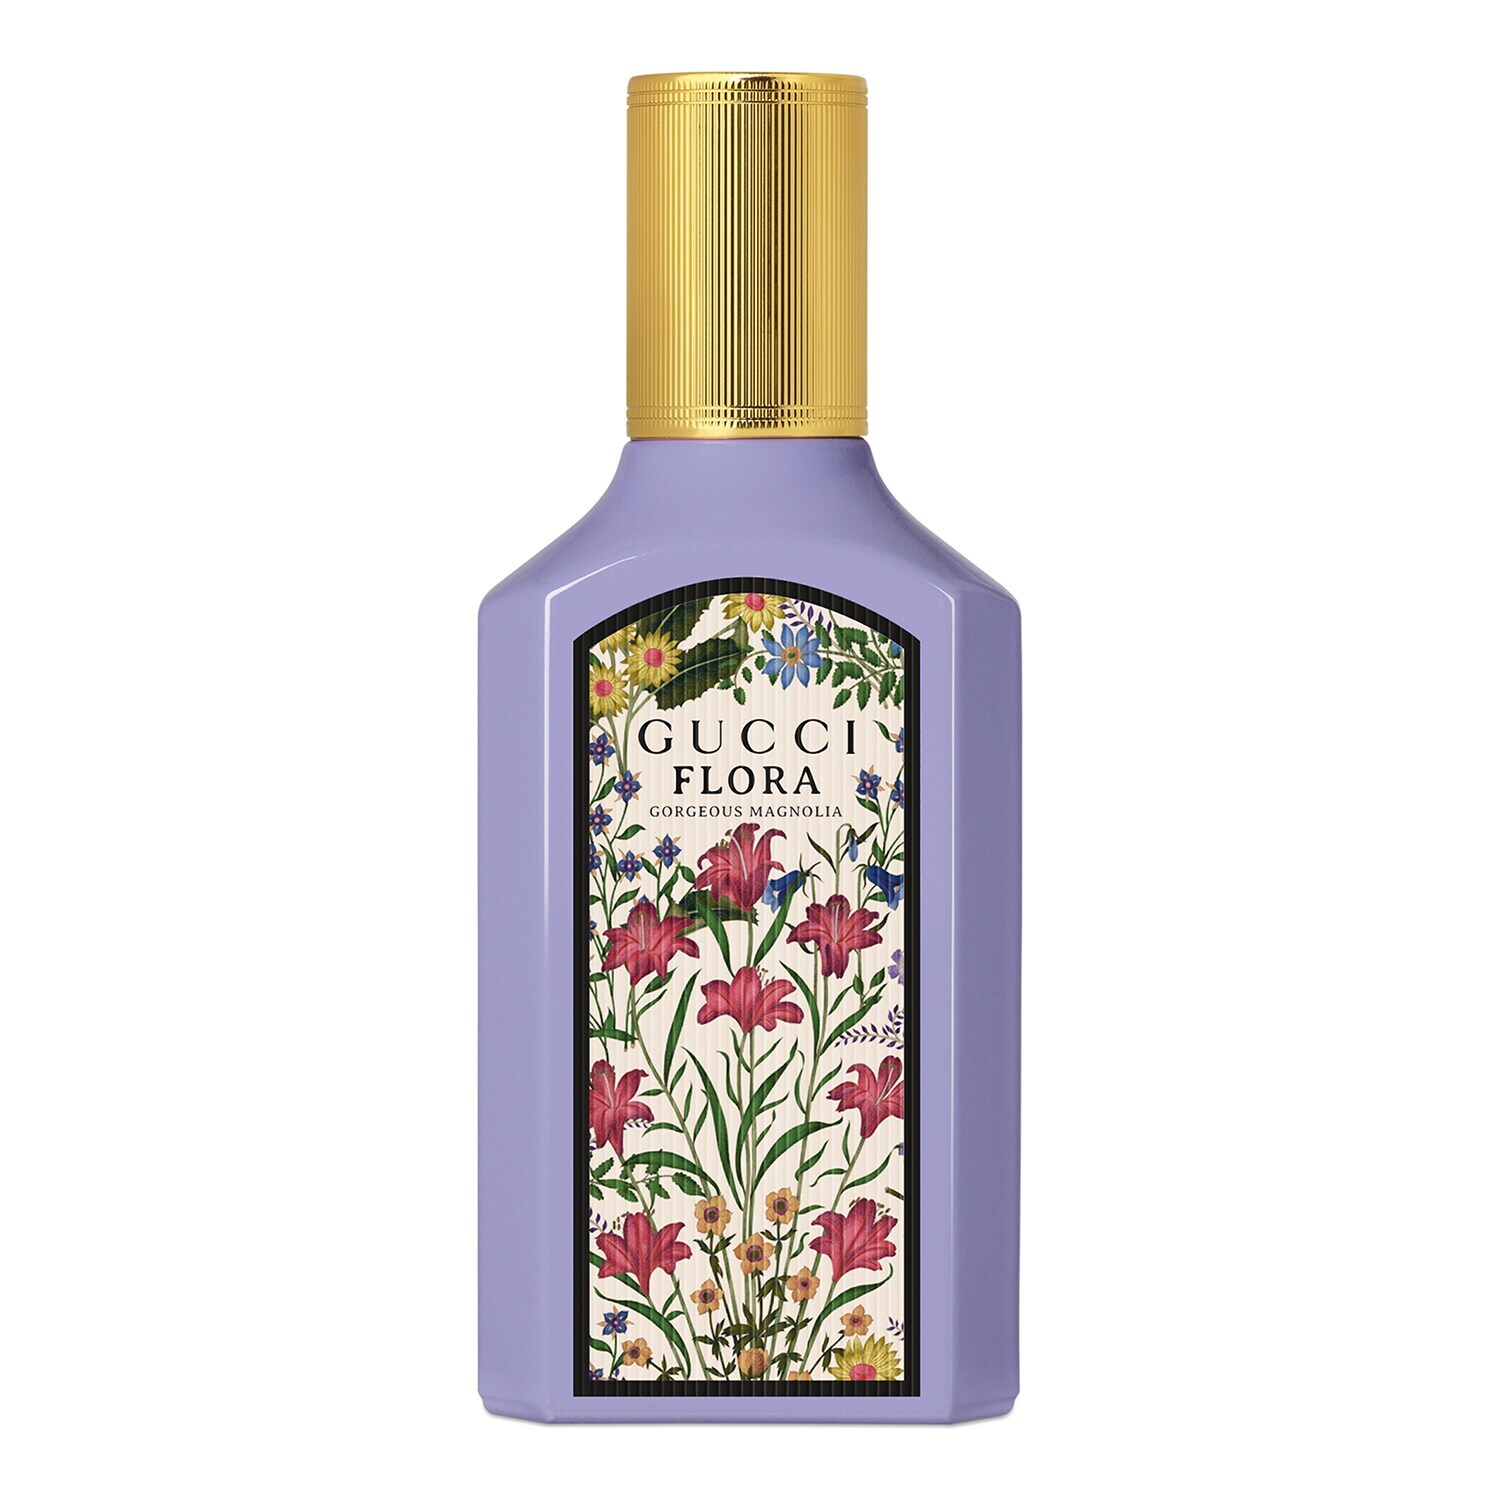 GUCCI  Flora Gorgeous Magnolia - Eau de Parfum